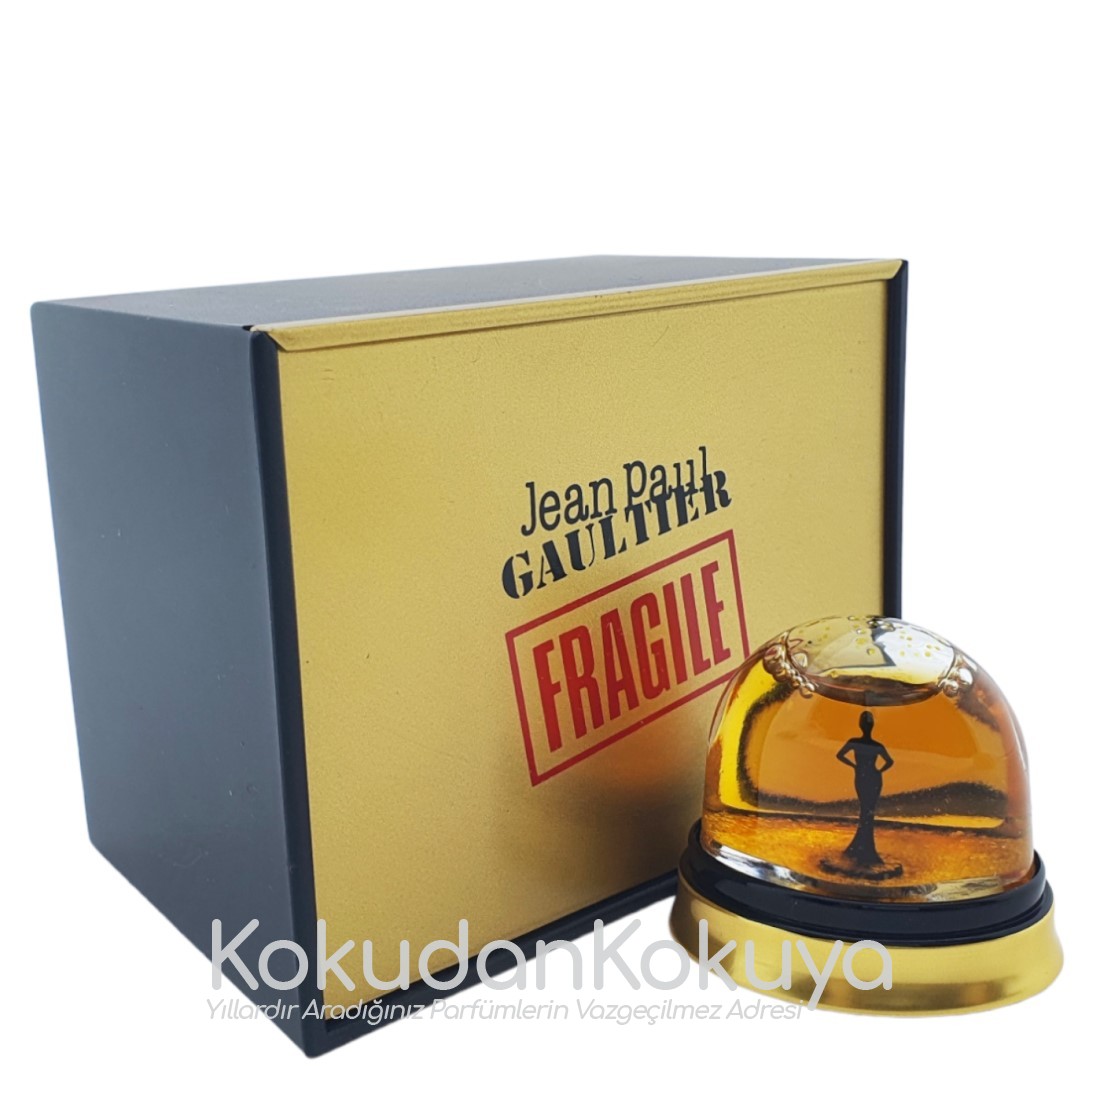 JEAN PAUL GAULTIER Fragile (Vintage) Parfüm Kadın 7ml Minyatür (Mini Perfume) Dökme 